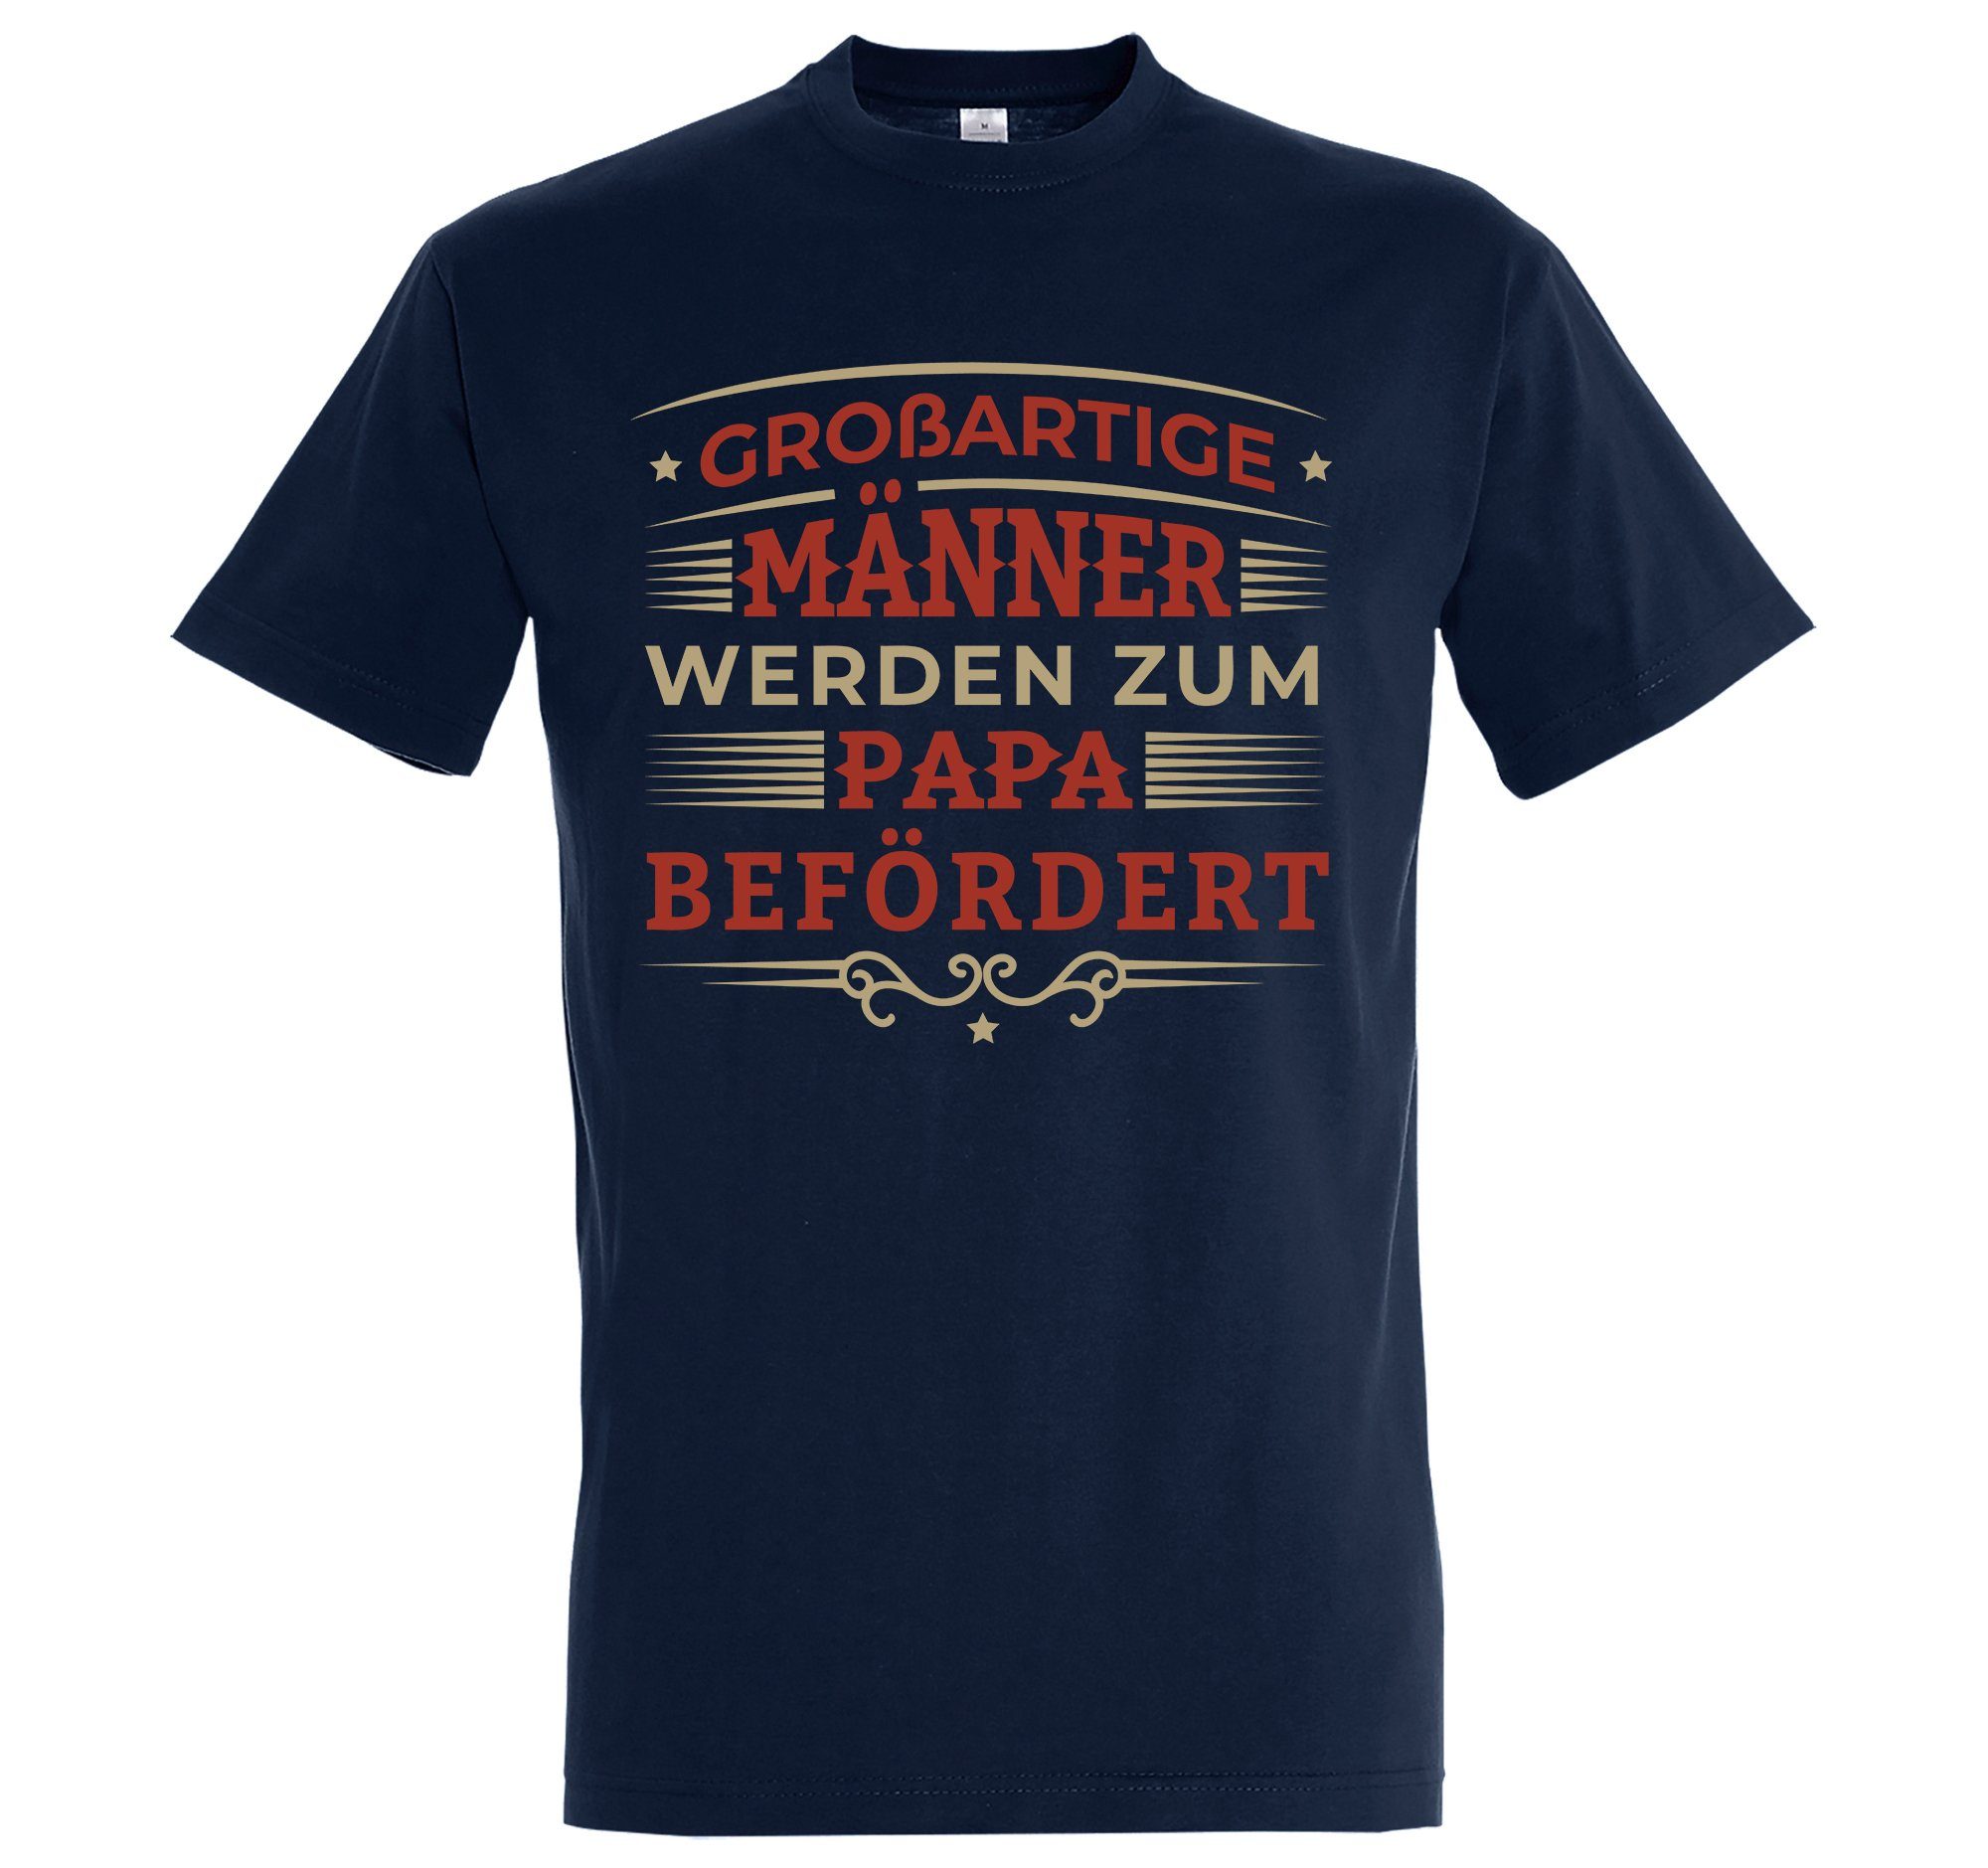 Designz Befördert" Youth Frontprint Shirt Zum Werden mit Navyblau trendigem Herren "Männer T-Shirt Papa